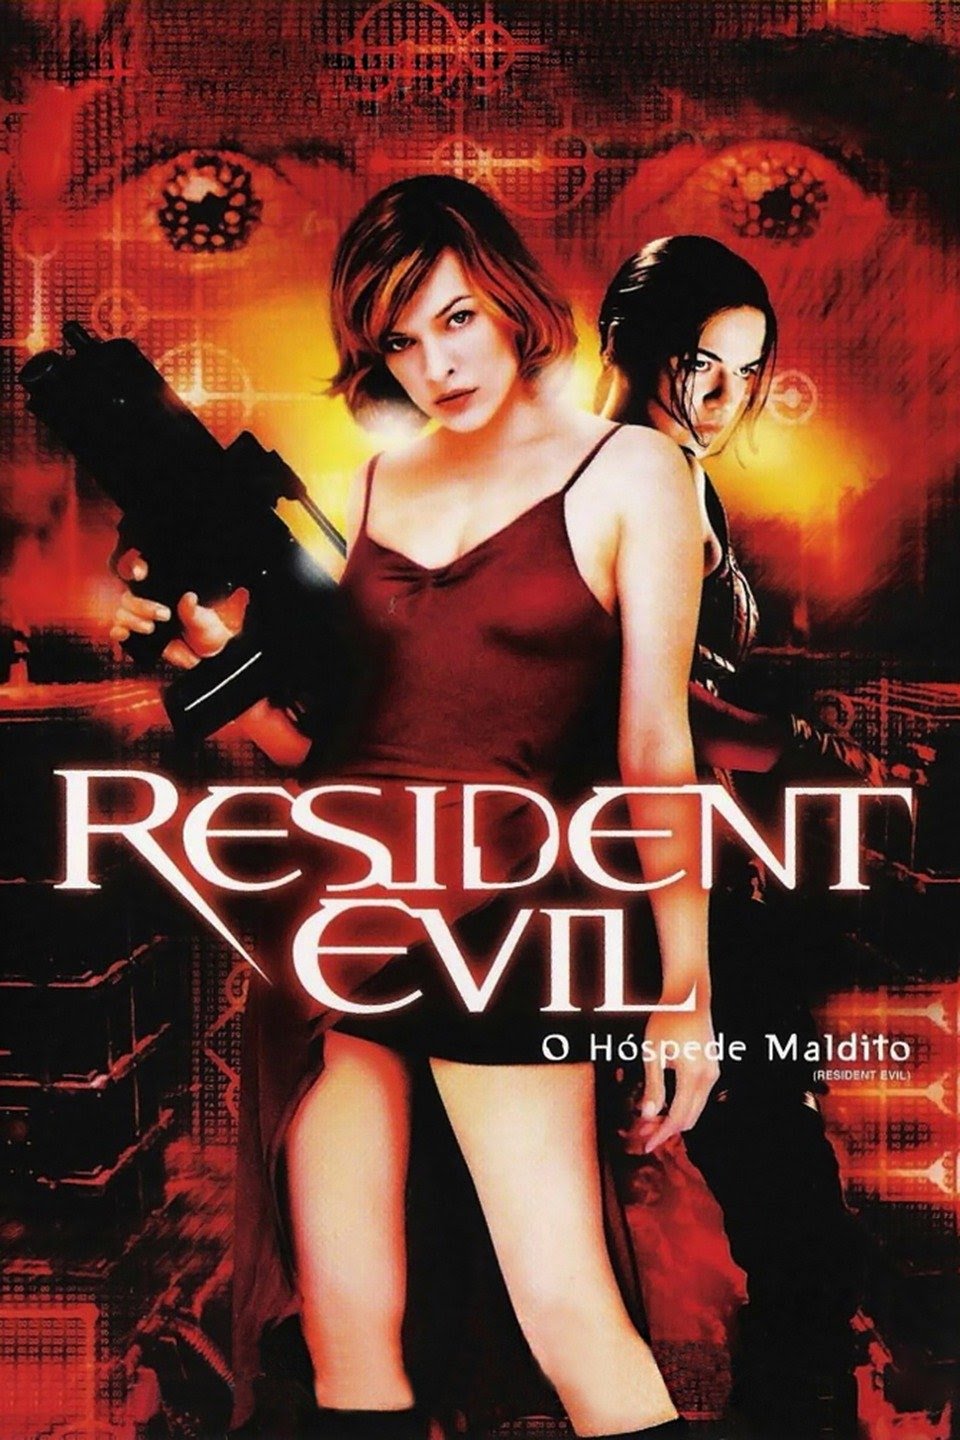 Resident Evil (jogo eletrônico de 2002) – Wikipédia, a enciclopédia livre